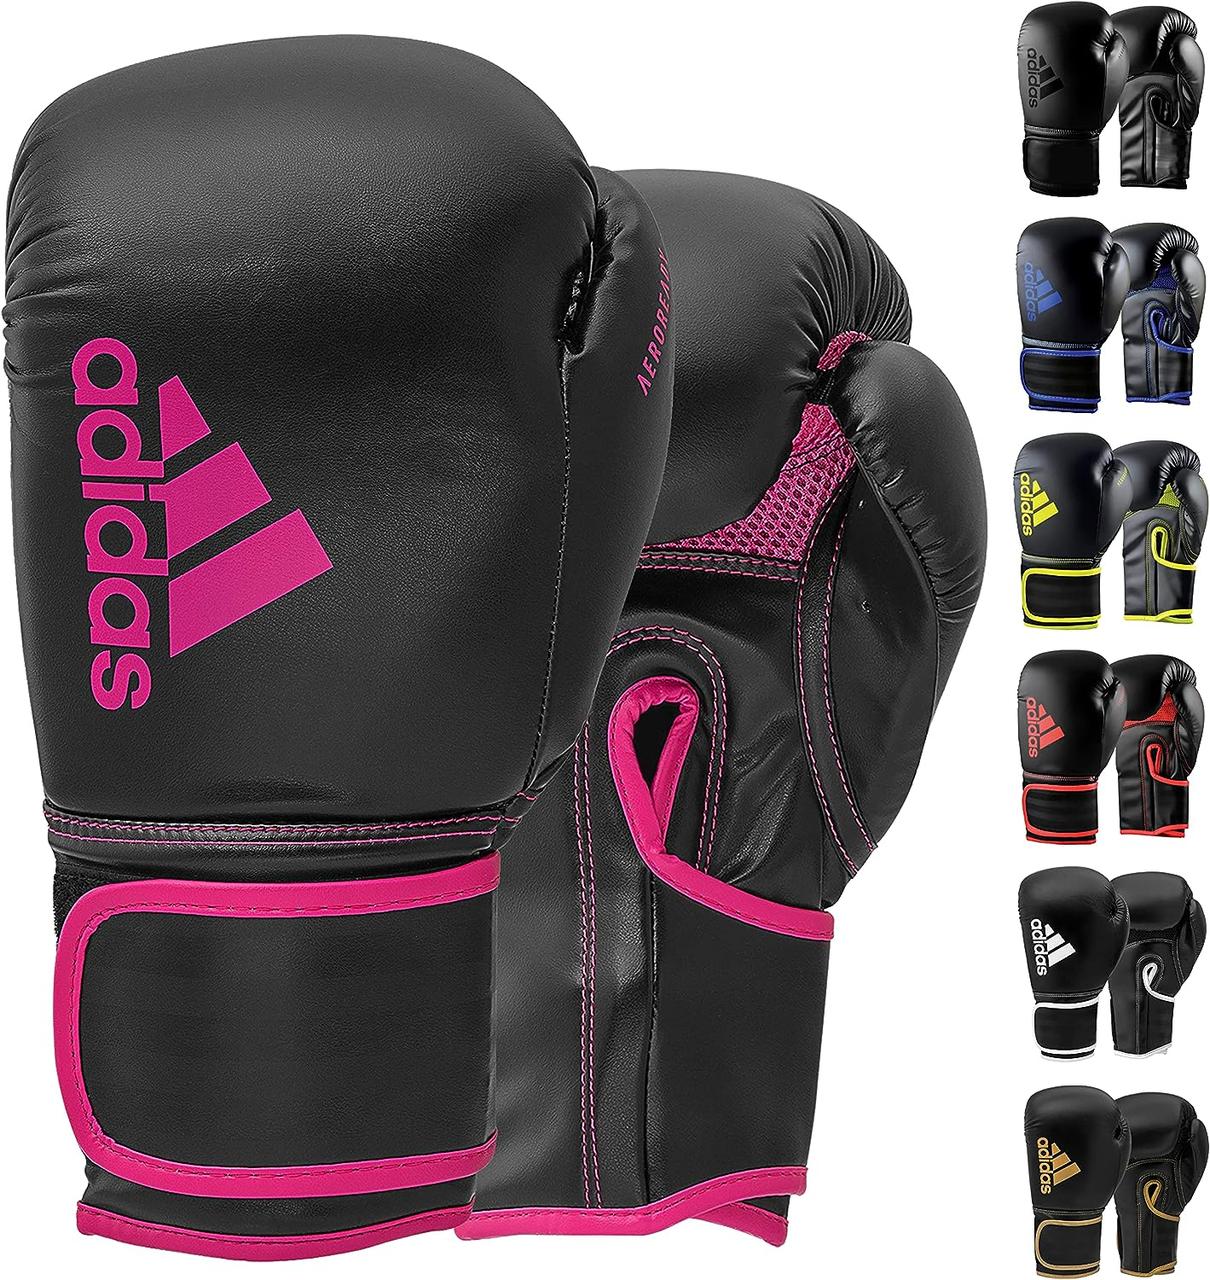 Black/Shock Pink 8oz Боксерські рукавички Adidas Hybrid 80 для боксу, кікбоксингу, ММА, сумка, тренування